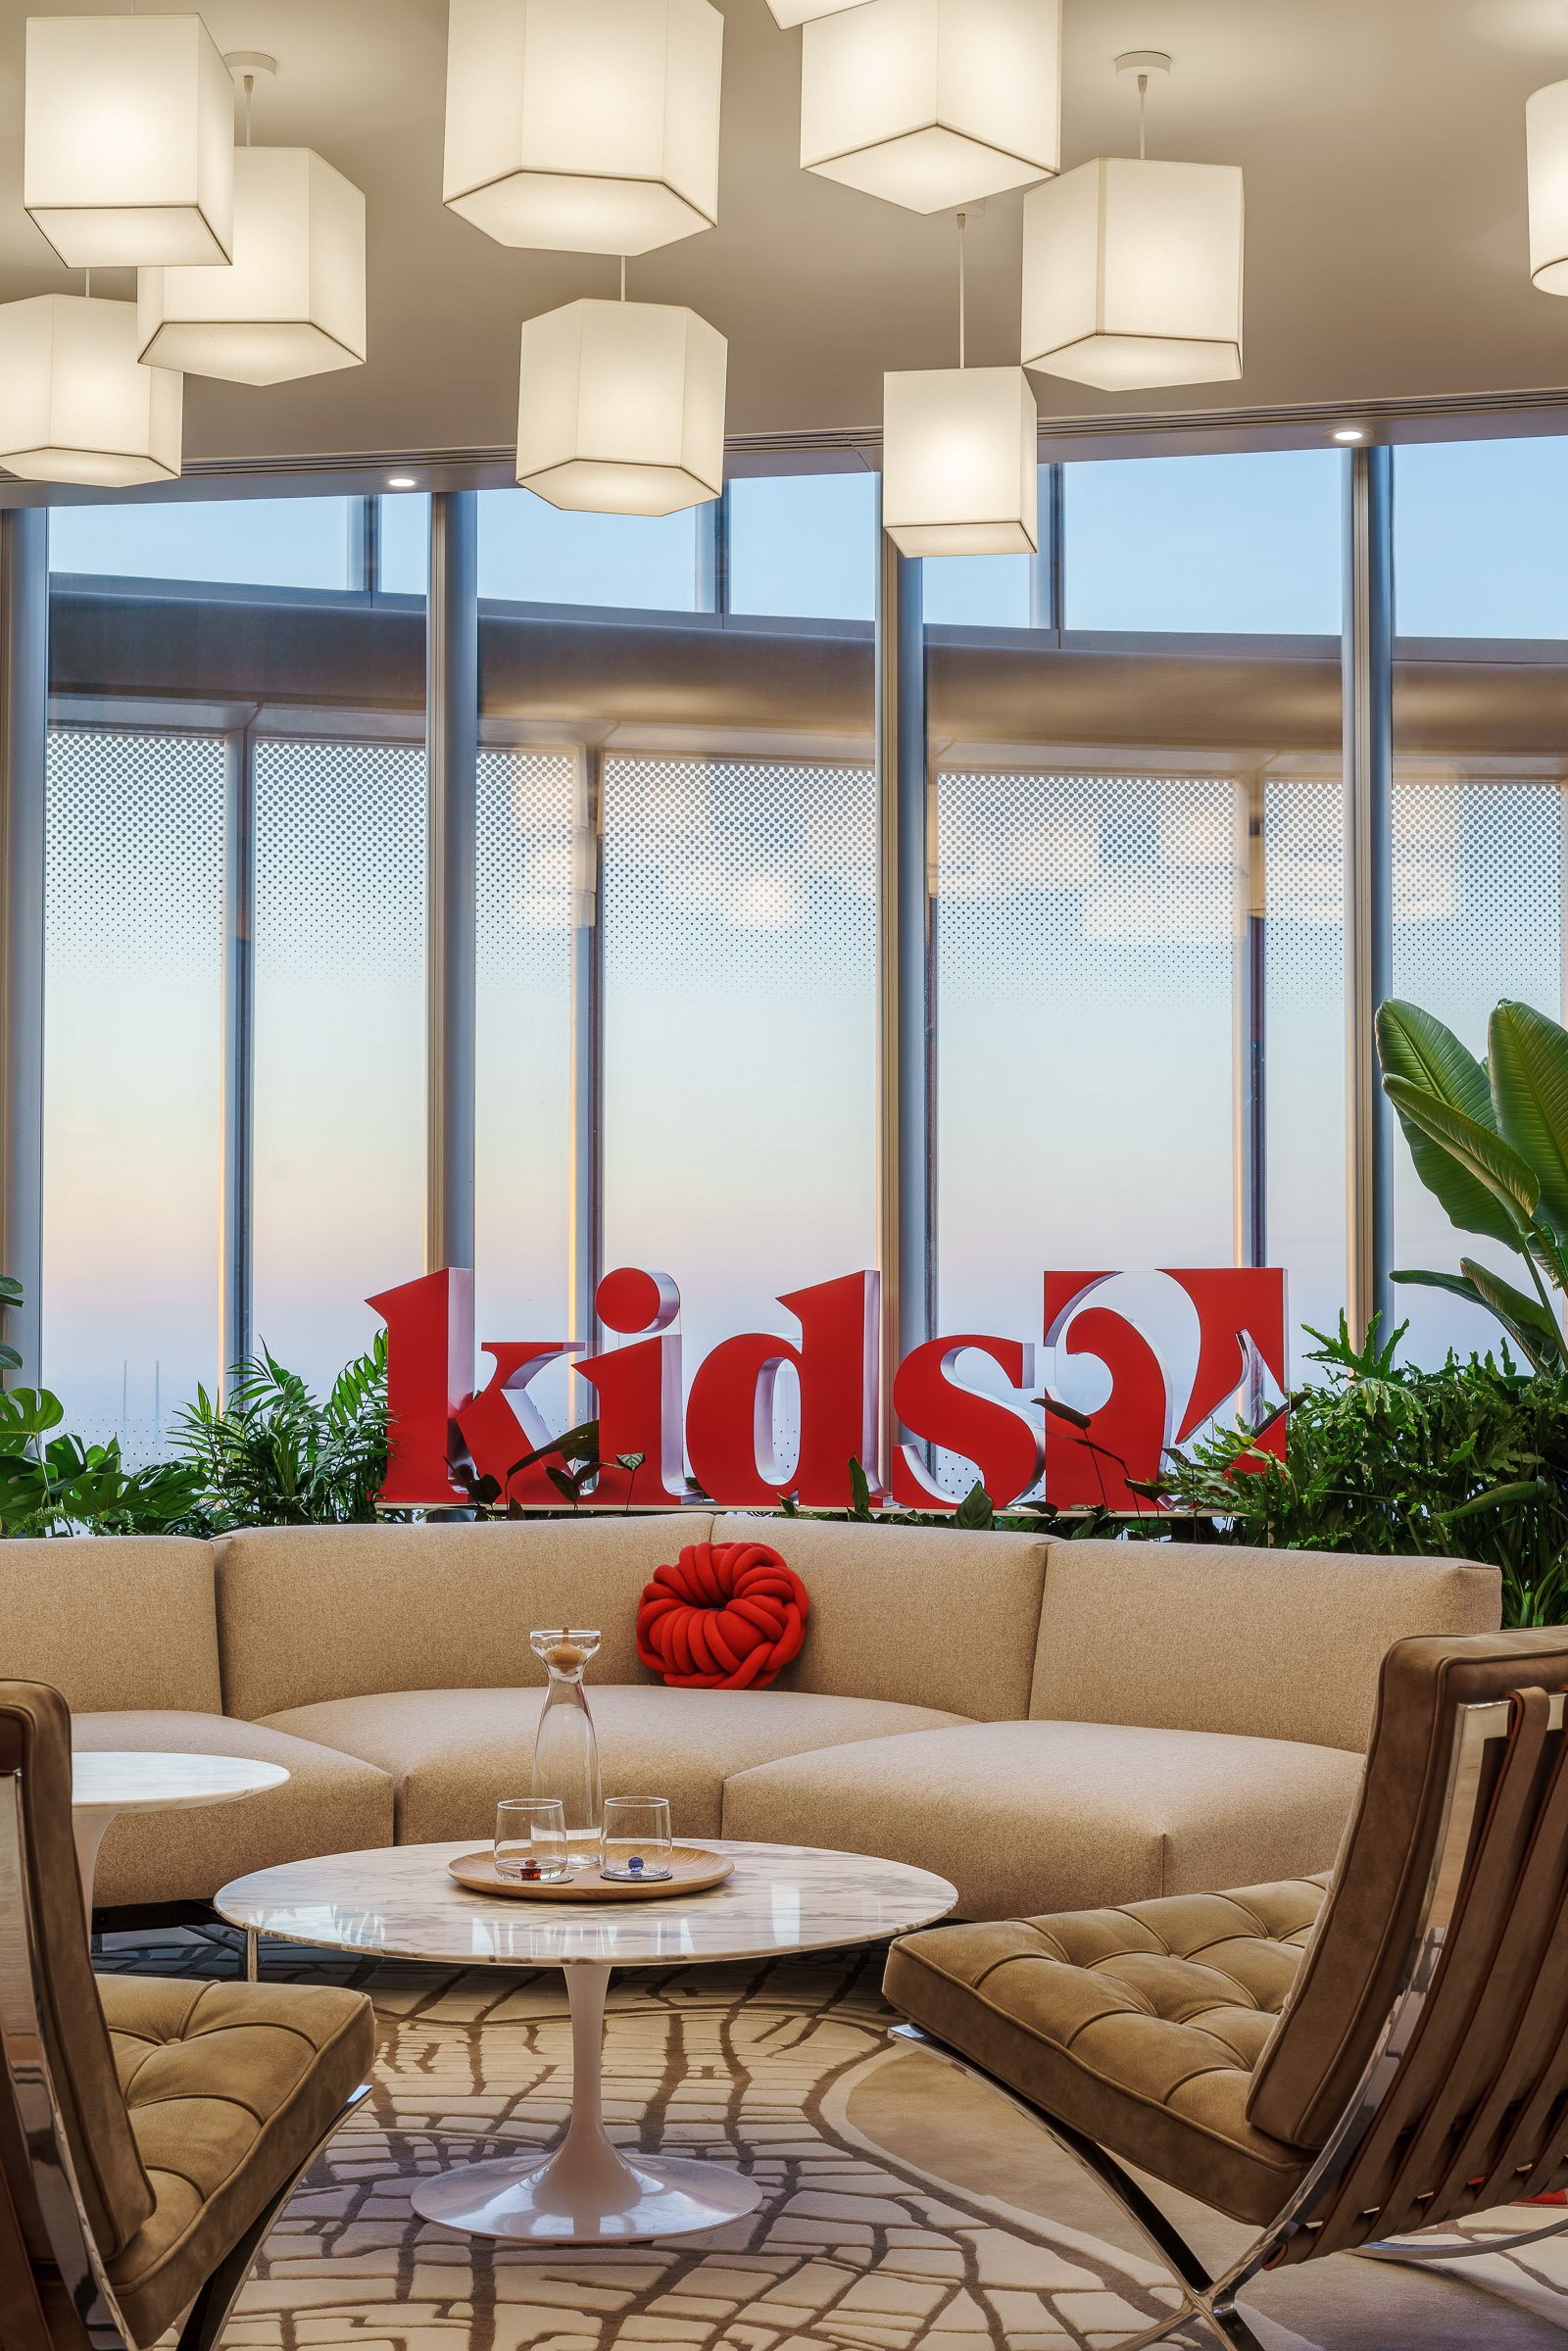 Kids2 Office / M Moser Associates